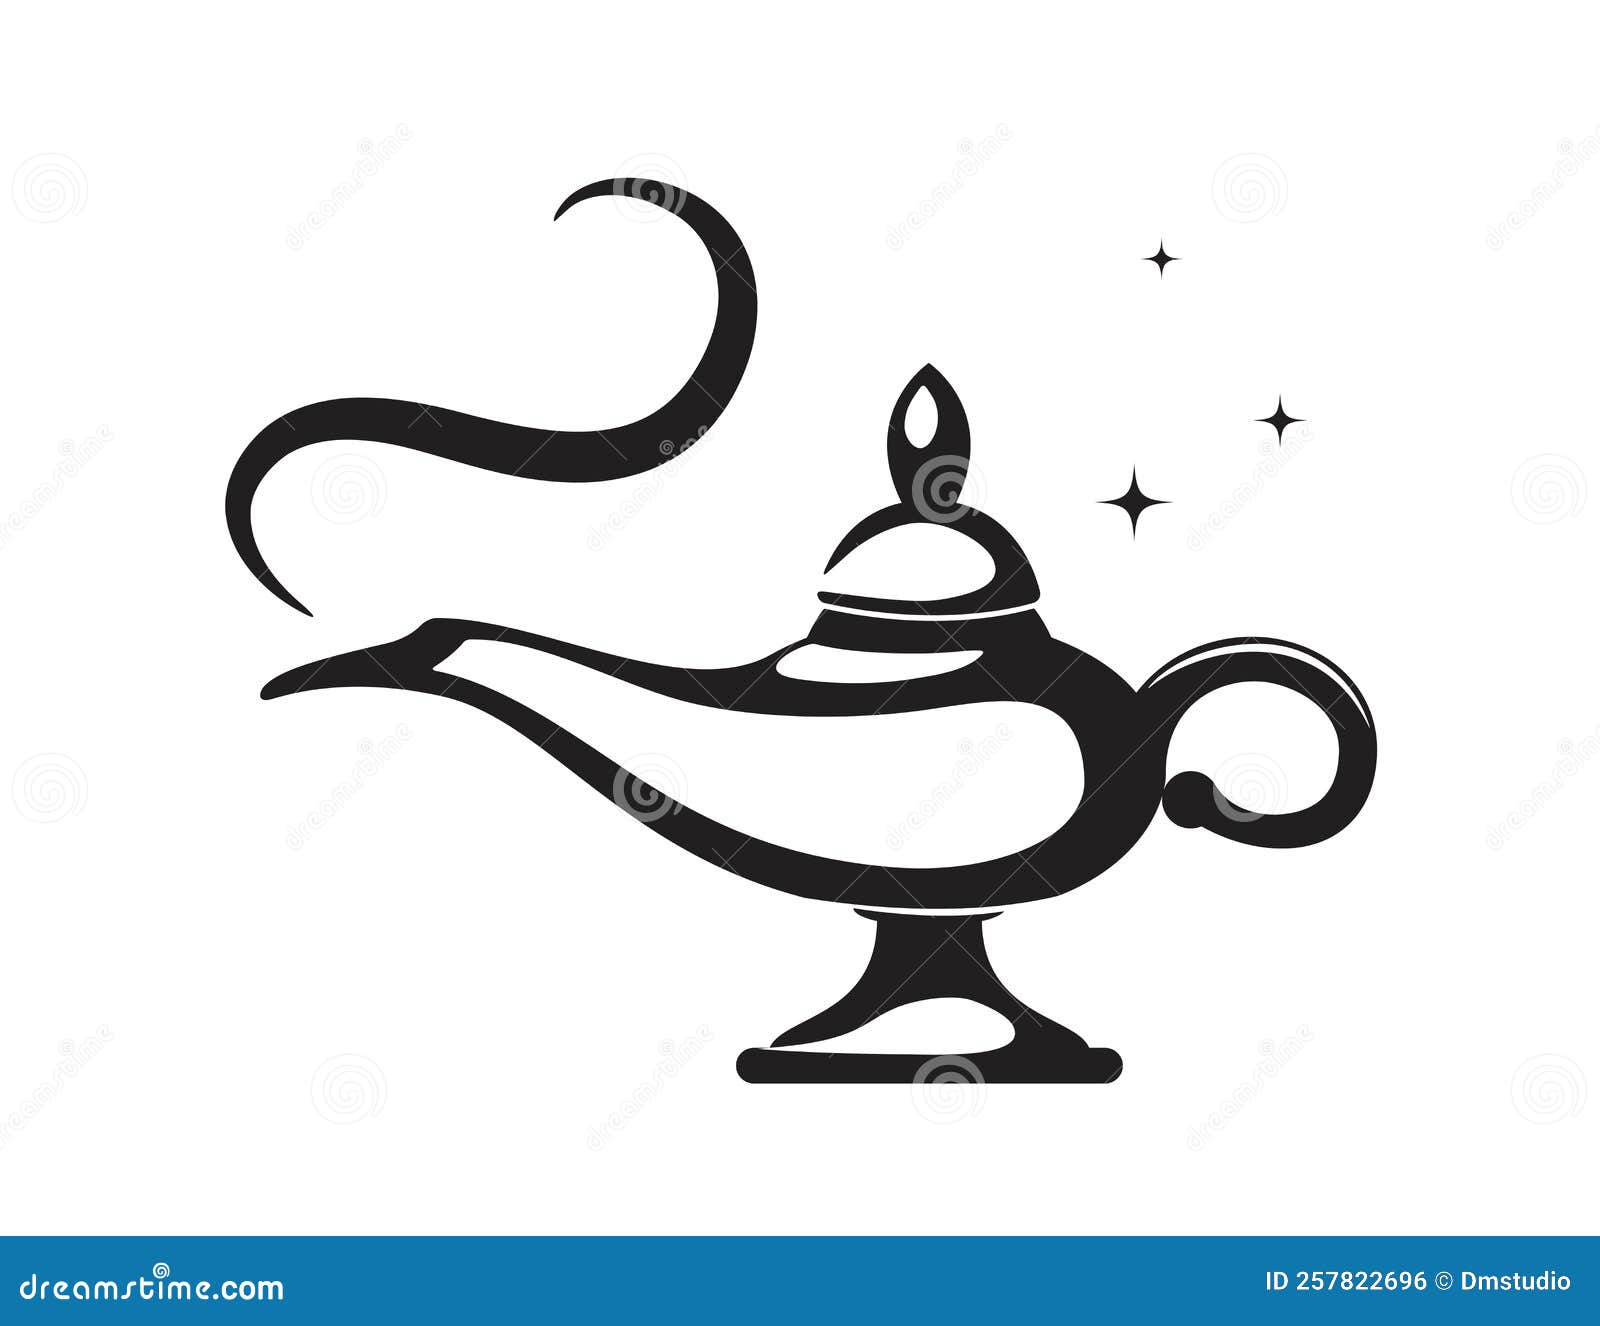 Genie Magic Lamp Aladdin Pantomime Cartoon | CartoonDealer.com #127663767